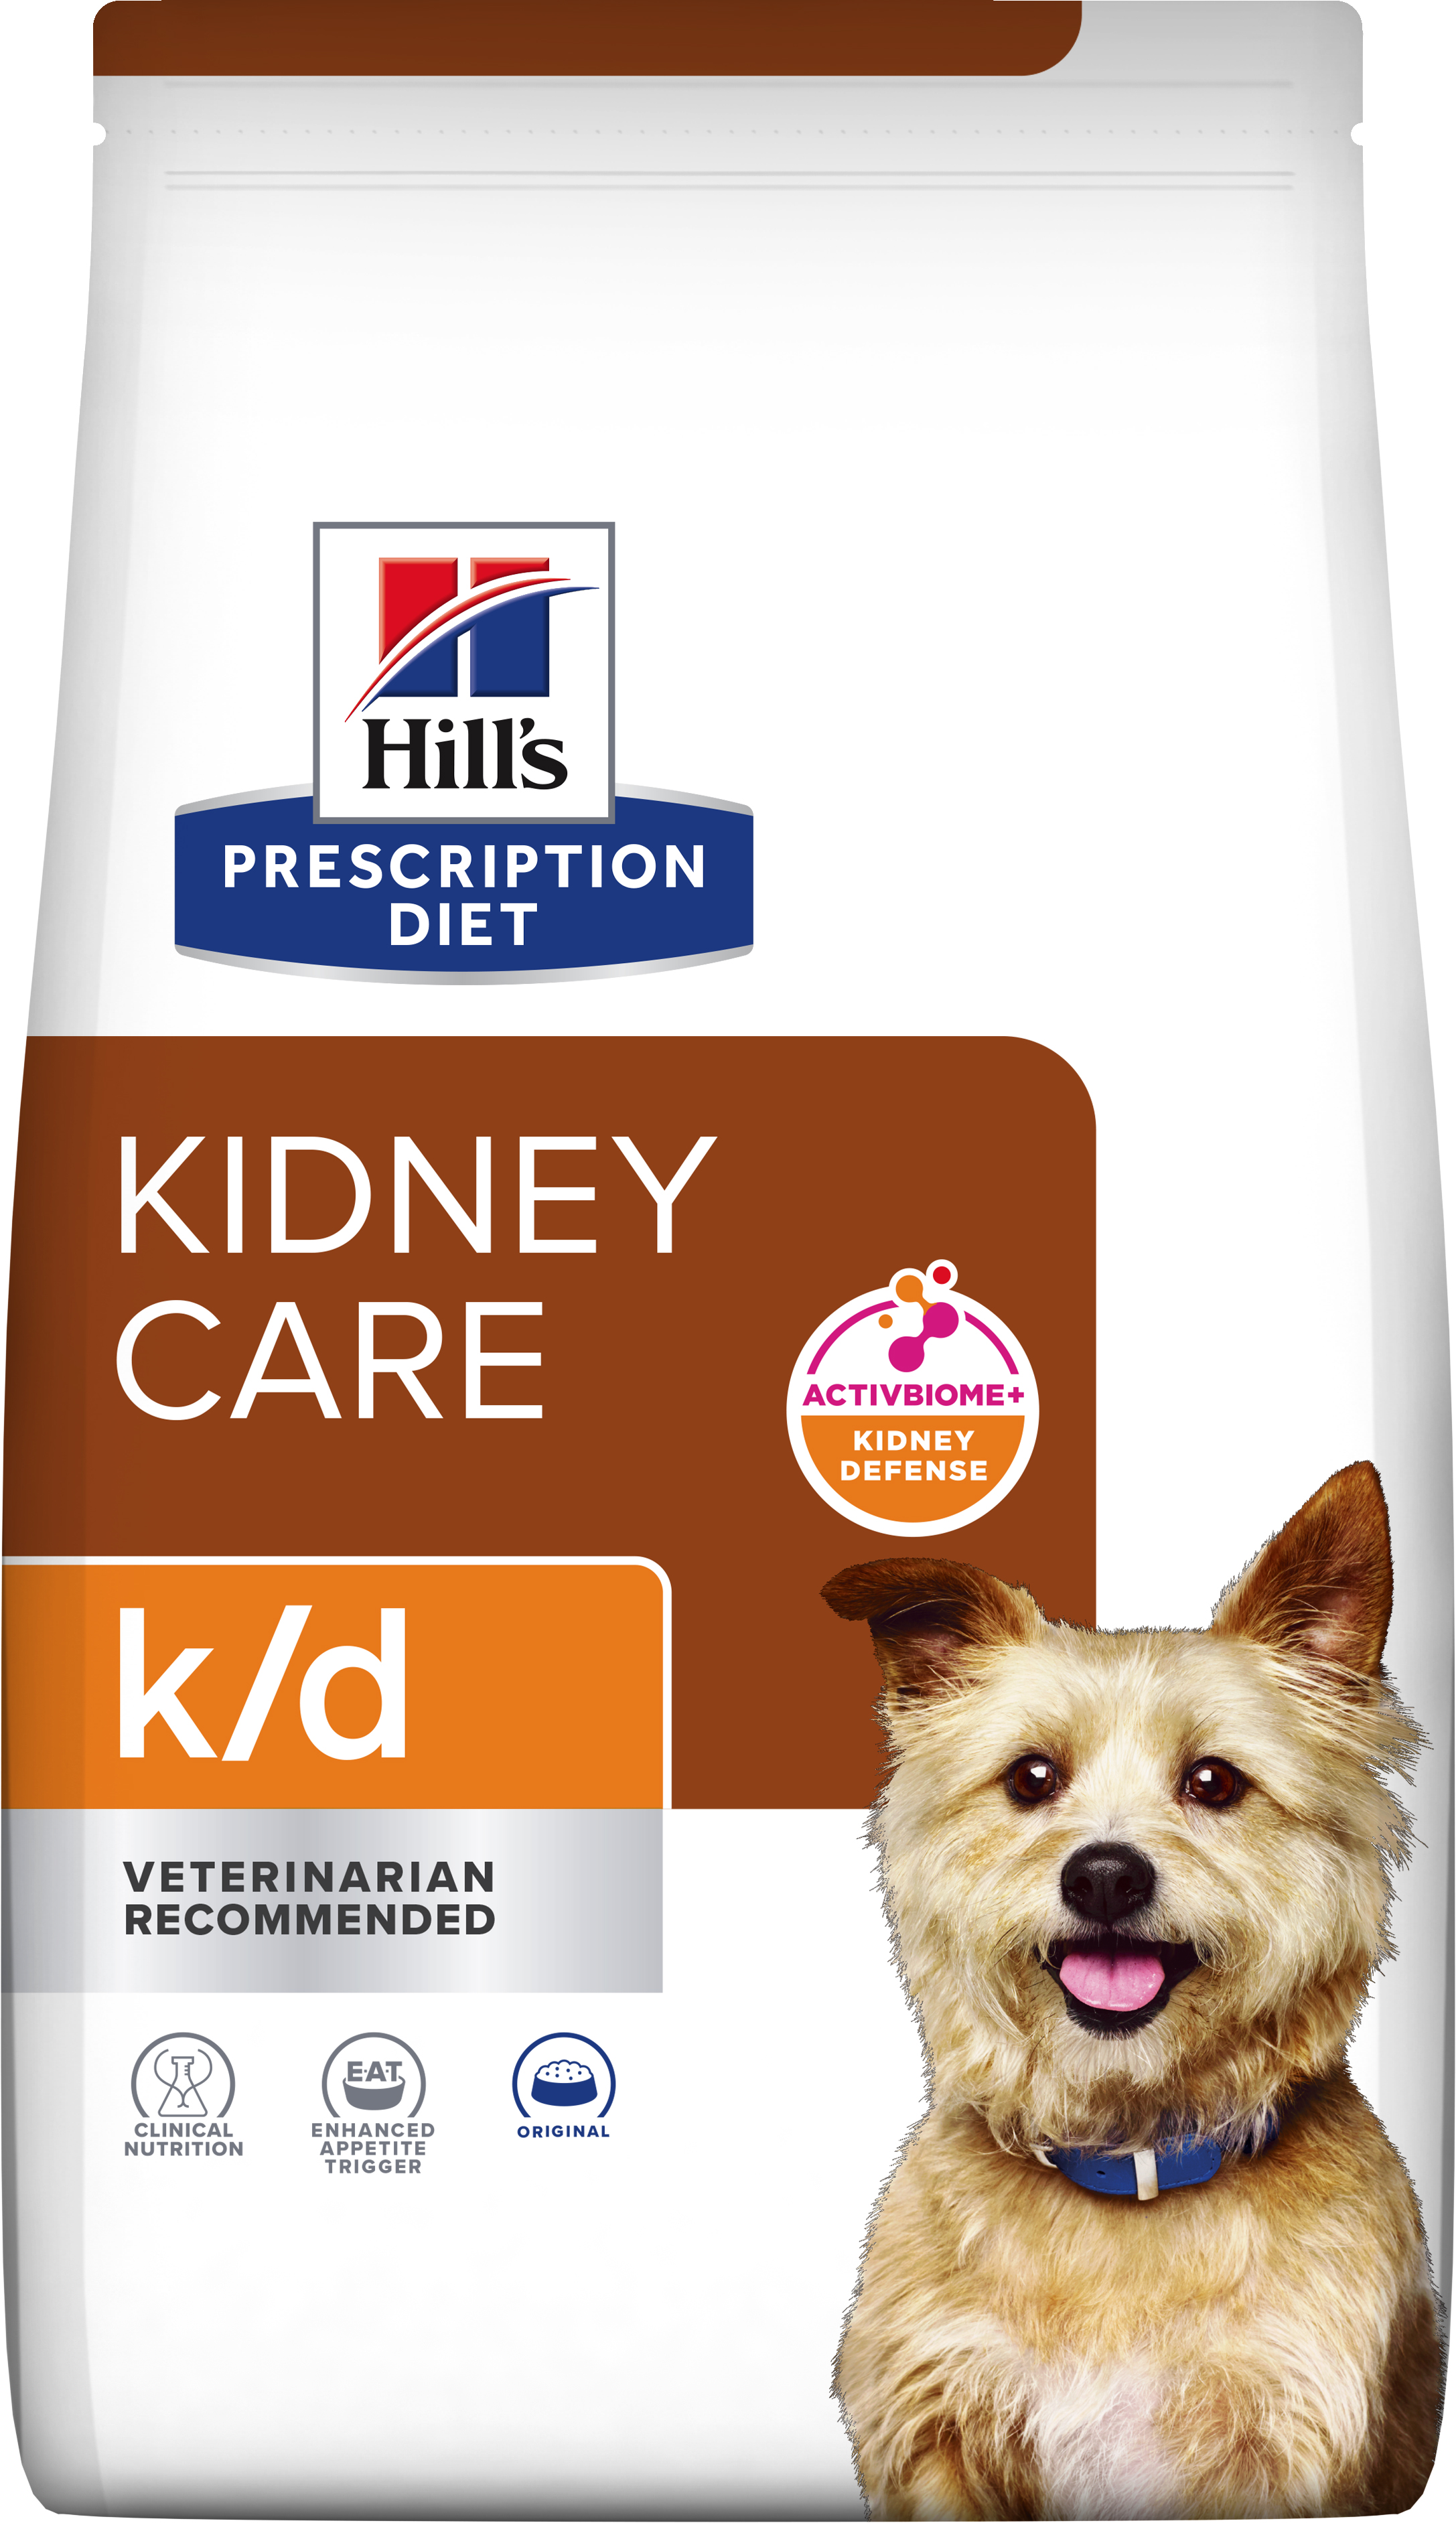 k/d | Hill's Prescription Diet קידני קייר לכלב, 4 ק"ג